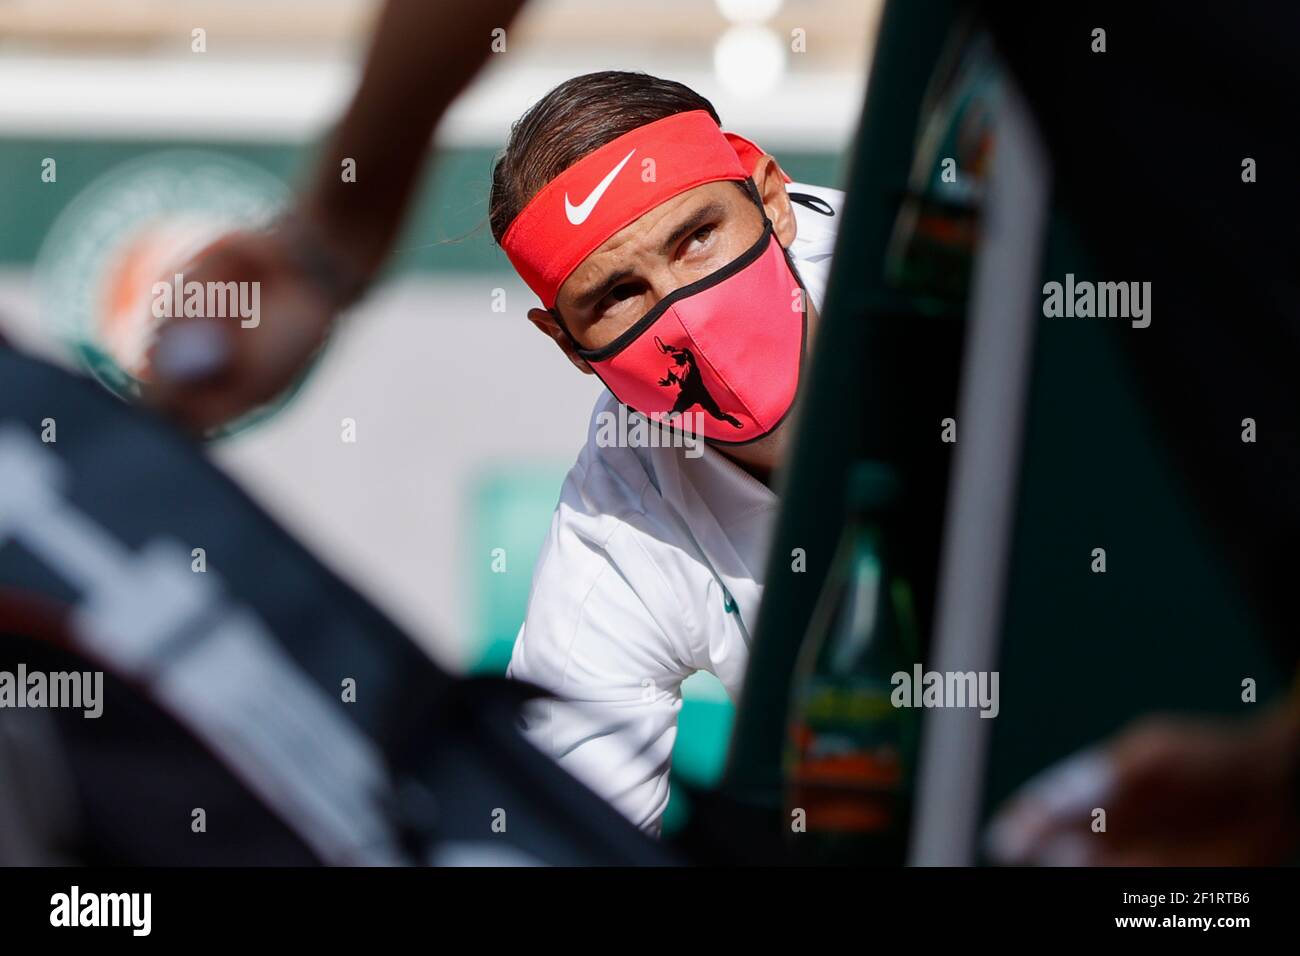 Rafael NADAL (ESP) während des Roland Garros 2020, Grand Slam Tennisturniers, am 9. Oktober 2020 im Roland Garros Stadion in Paris, Frankreich - Foto Stephane Allaman / DPPI Stockfoto